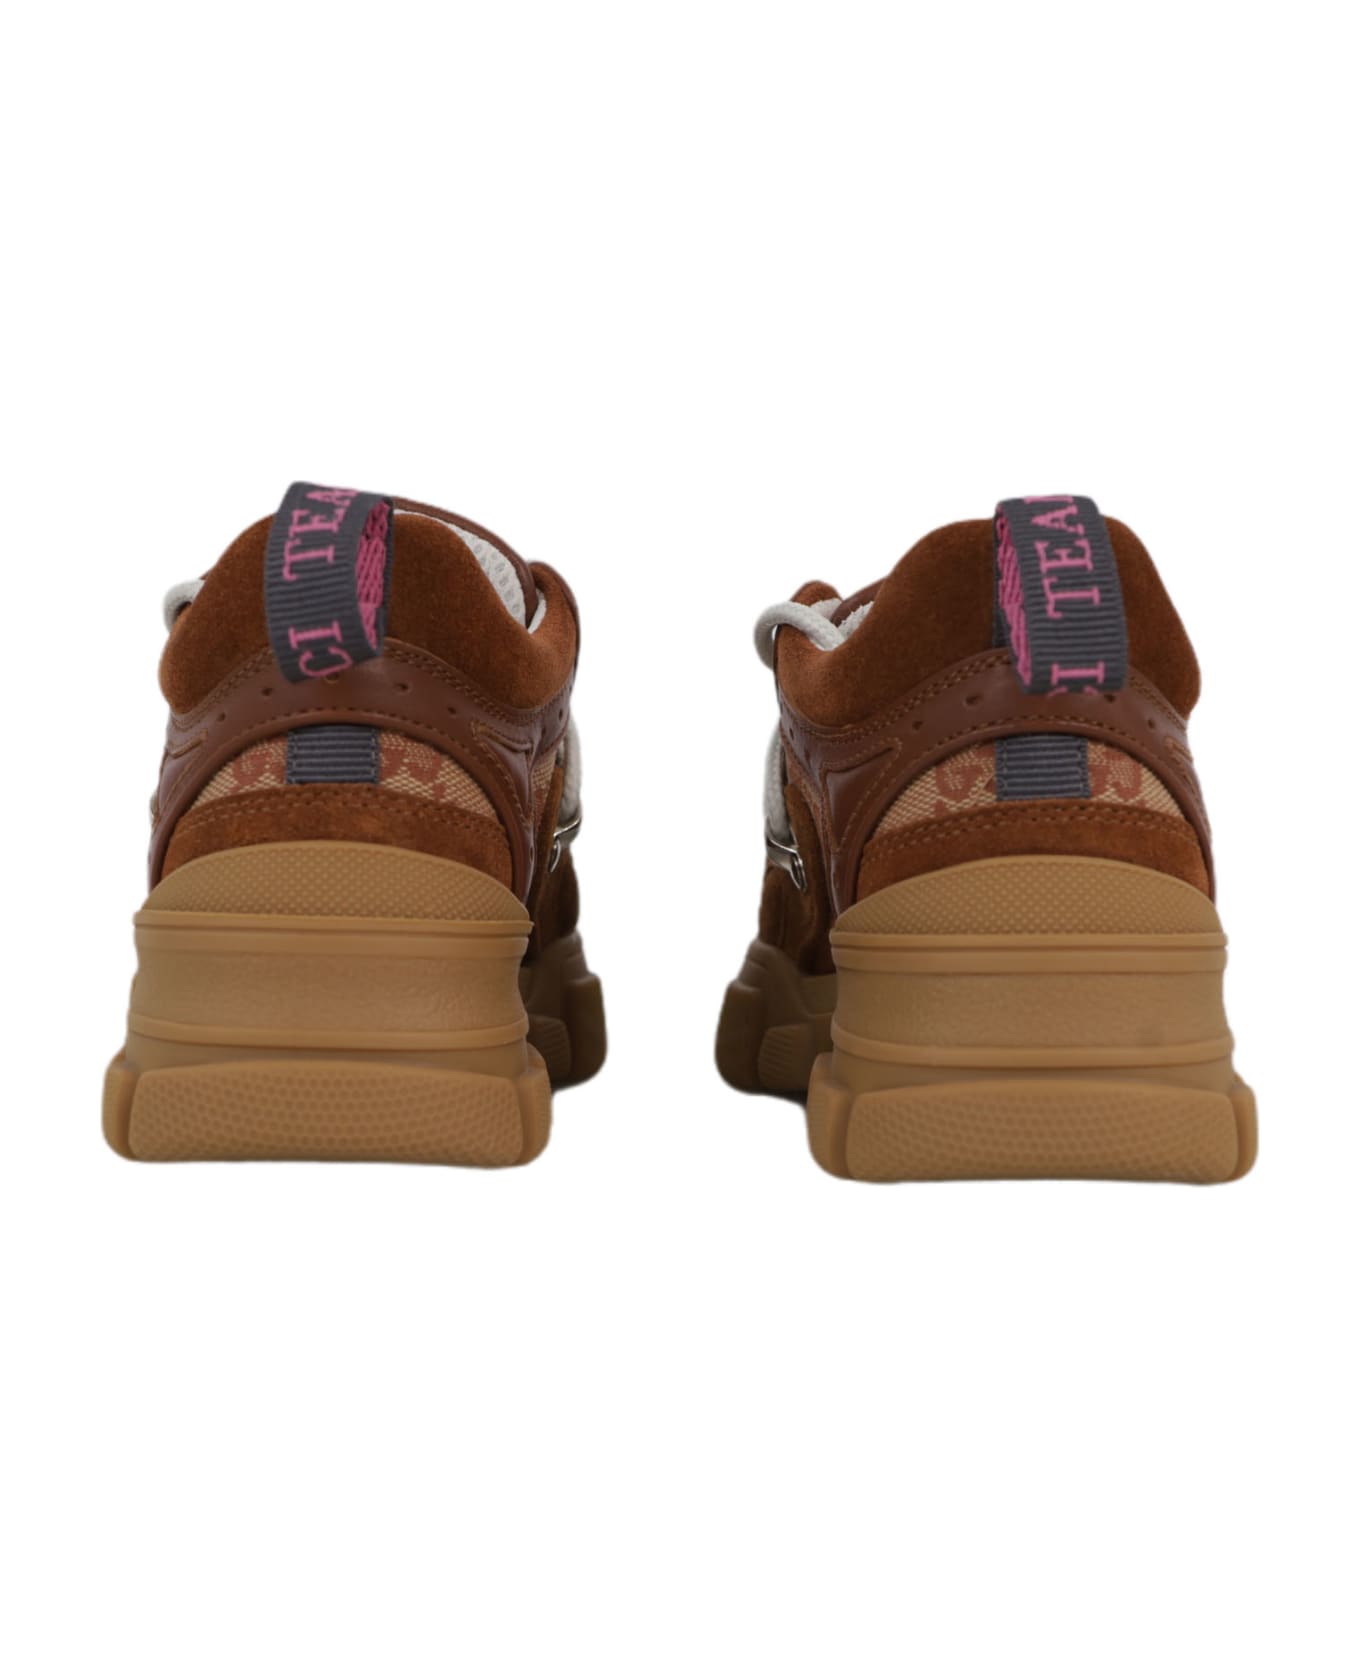 Gucci Flashtrek Sneakers - Brown